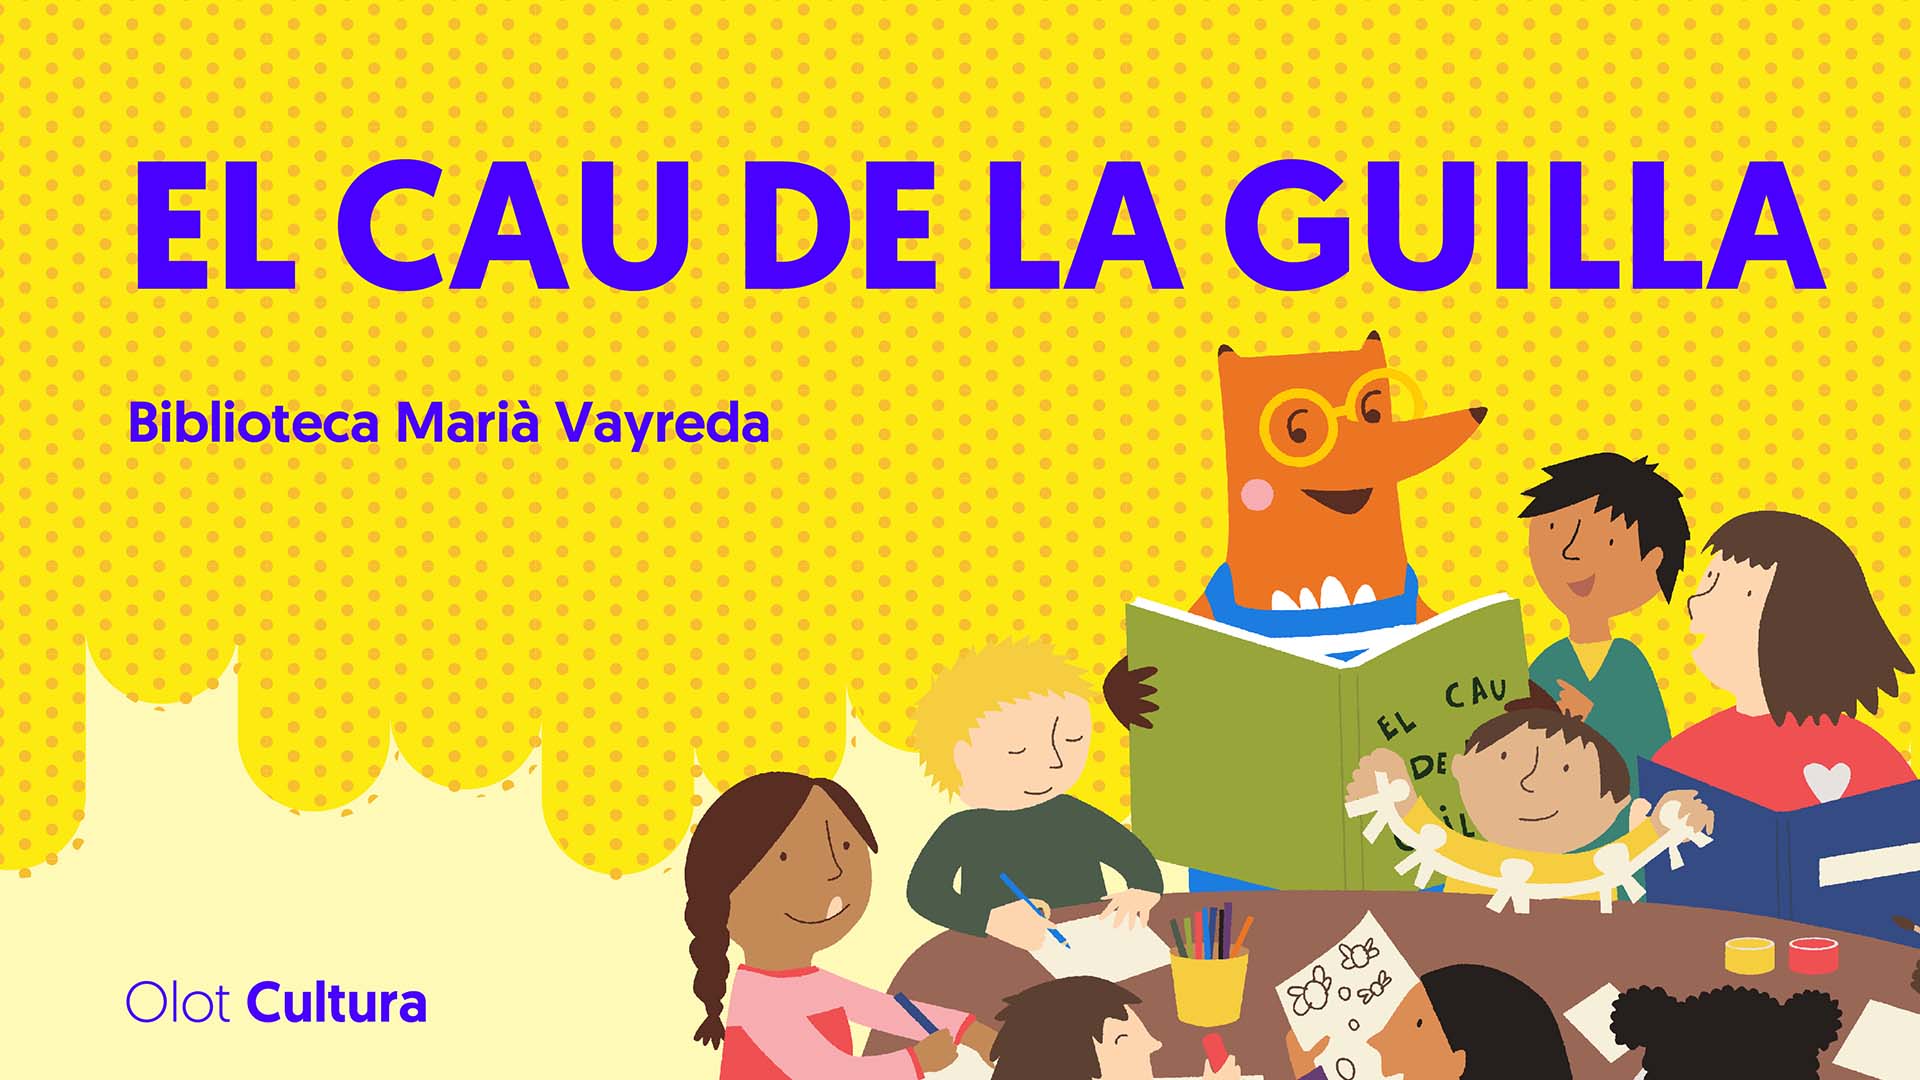 Nou projecte a la Biblioteca: El Cau de la Guilla Un espai on deixar puntualment els infants de forma gratuïta per ajudar a la conciliació familiar